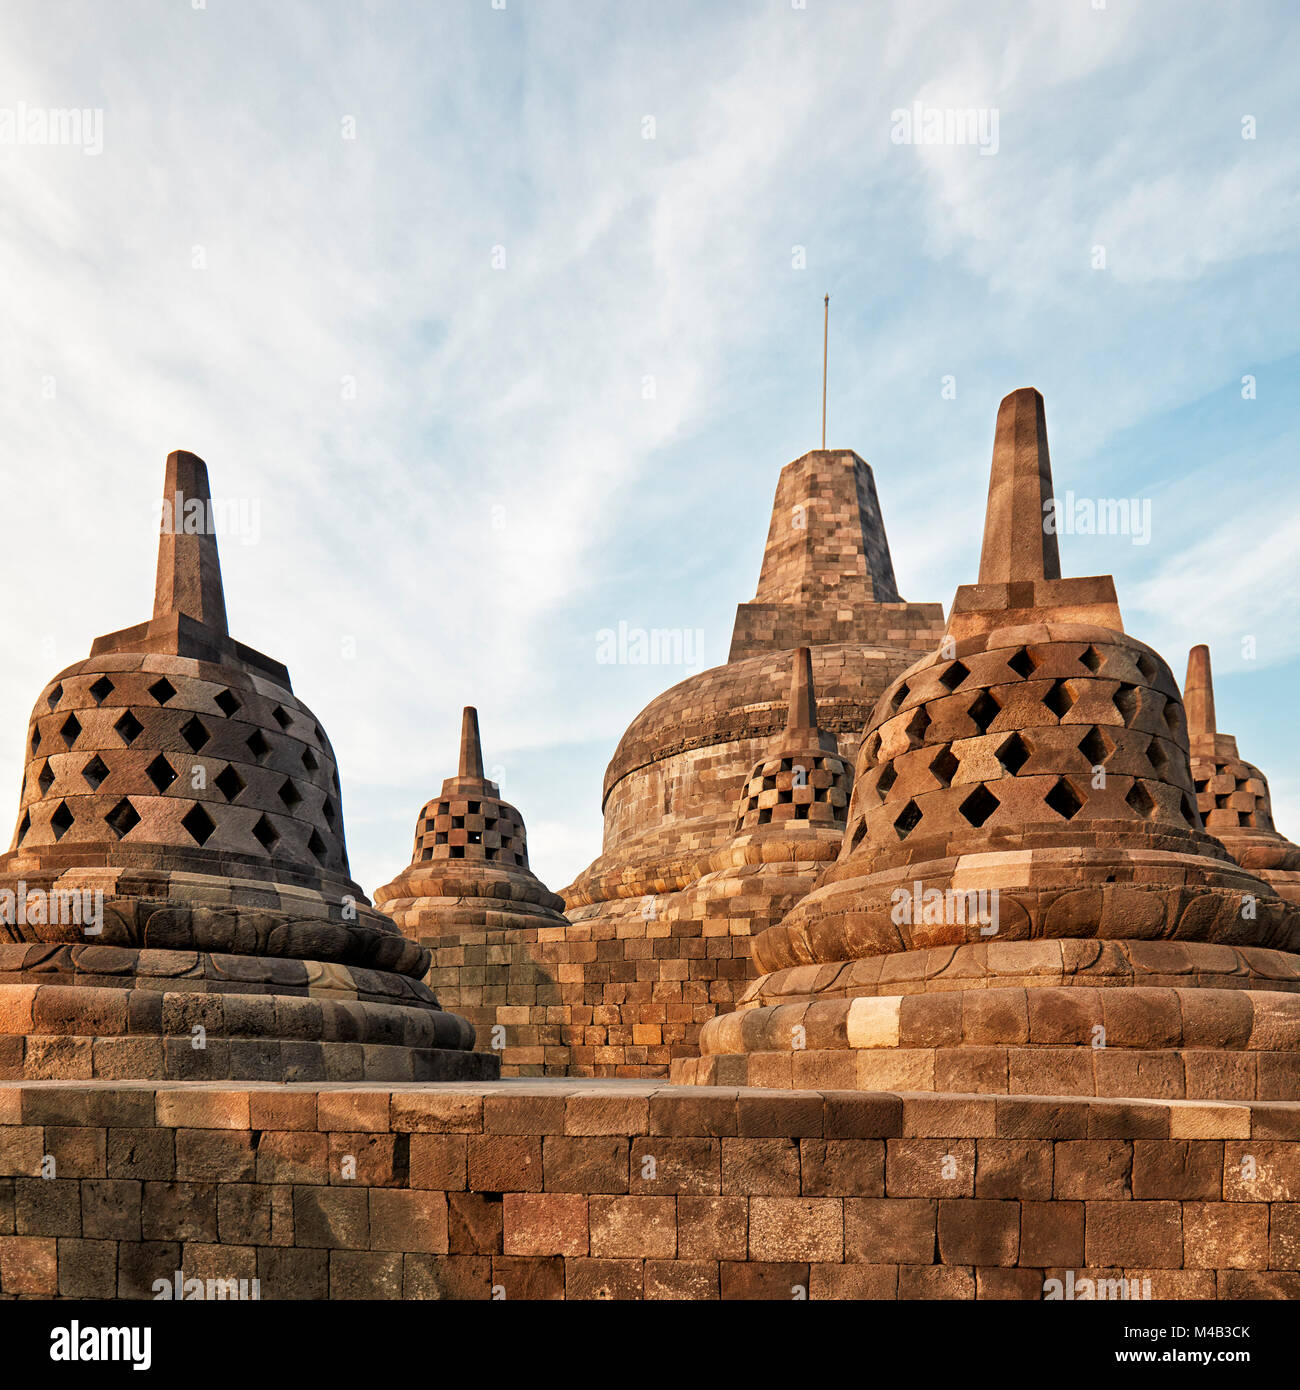 Rhombus durchlöchert und quadratische durchlöcherte Stupas und die obere Stupa in Borobudur buddhistischen Tempel. Magelang Regency, Java, Indonesien. Stockfoto